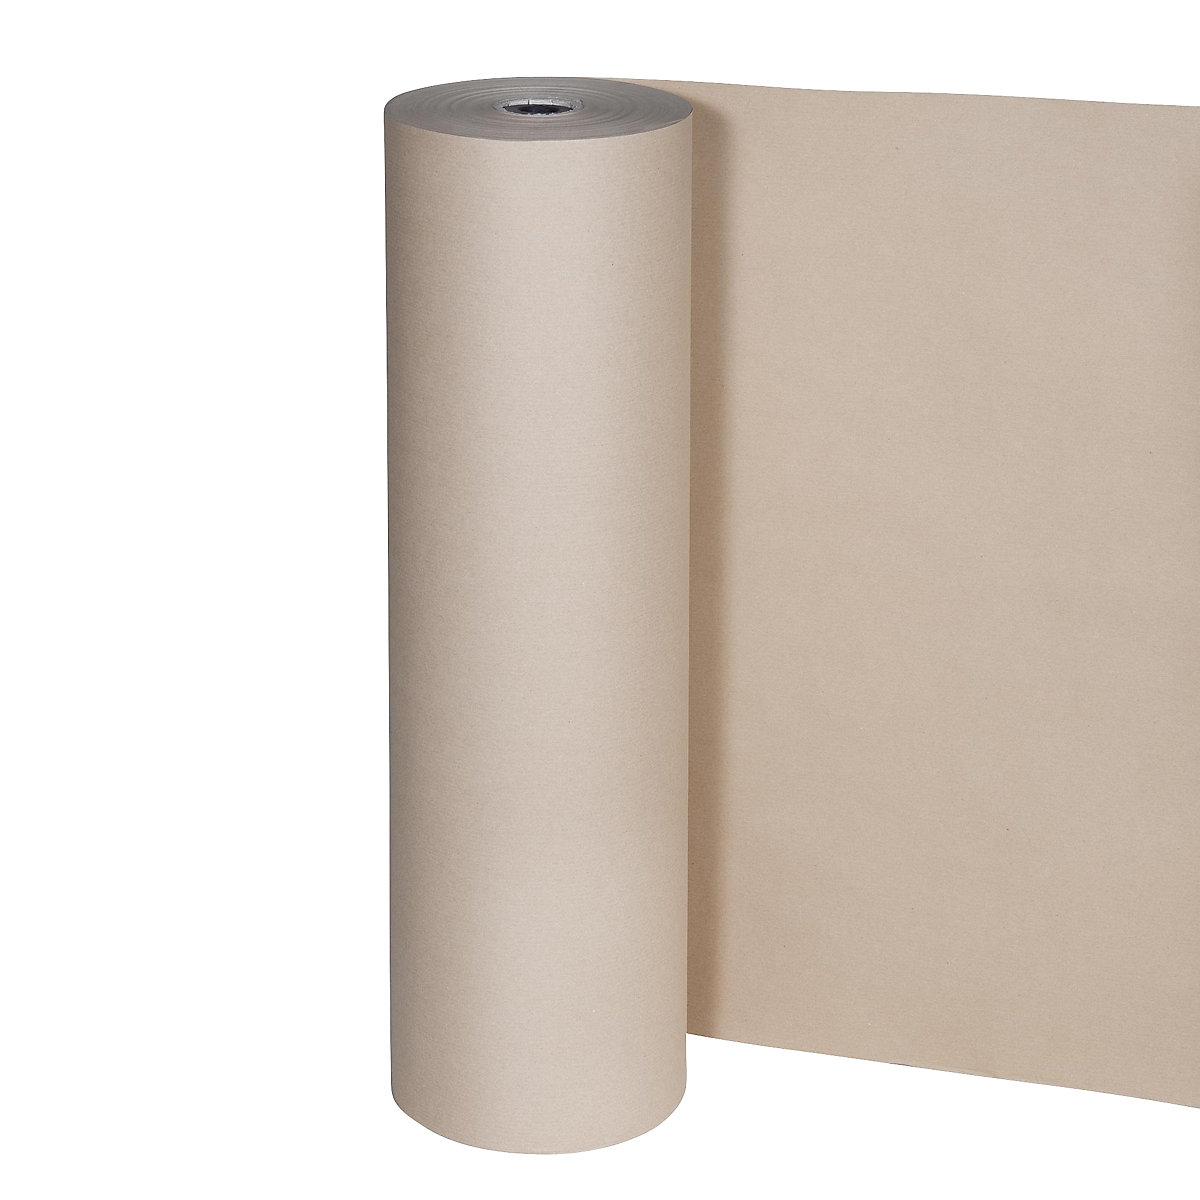 Hârtie pentru ambalat, 80 g/m², rolă pentru tăiat, 750 mm lățime, amb. 2 role-4